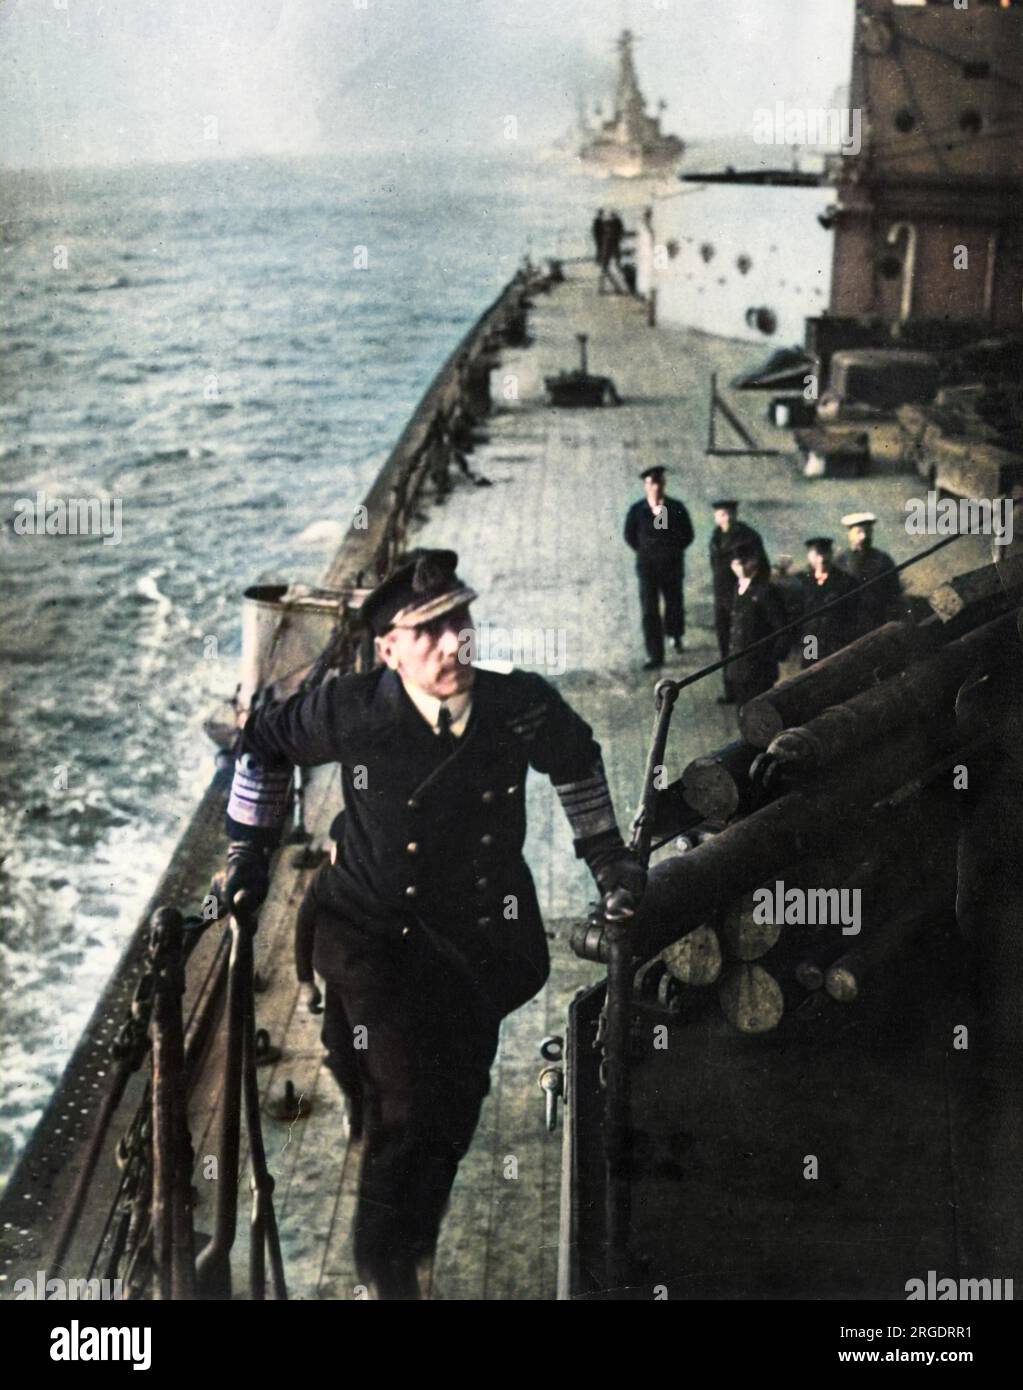 Ammiraglio Sir John Rushworth Jellicoe, i conte Jellicoe (1859-1935), ammiraglio della Royal Navy britannica. Comandò la Grand Fleet nella battaglia dello Jutland (1916) durante la prima guerra mondiale. Visto qui a bordo della sua nave ammiraglia, la HMS Iron Duke, con marinai sul ponte sullo sfondo. Foto Stock